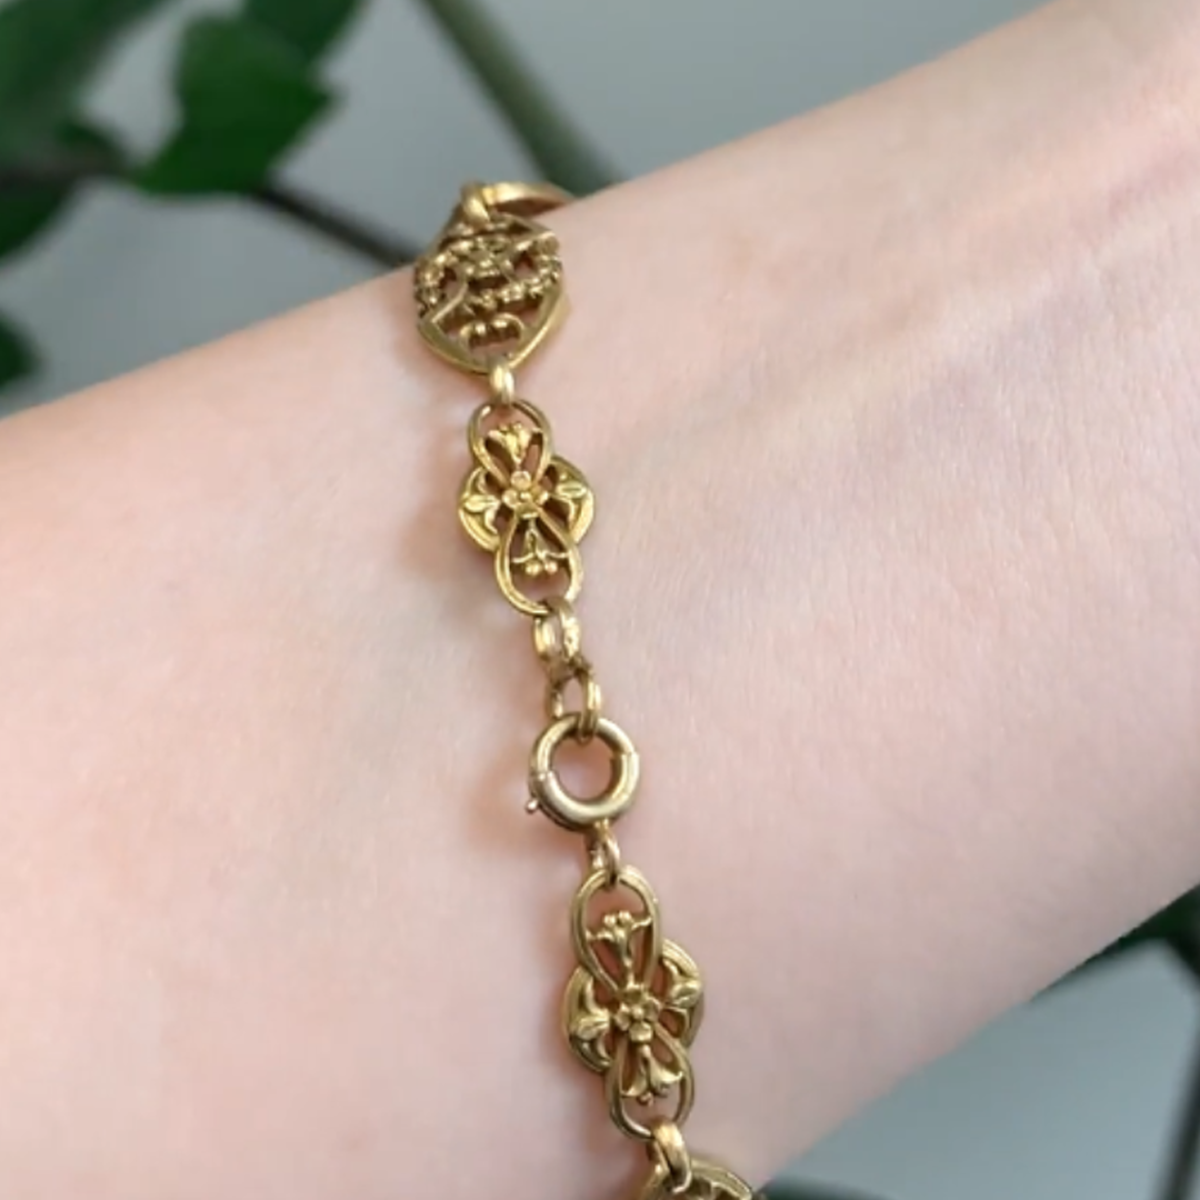 Art Nouveau 18KT Yellow Gold Diamond Natural Pearl Bracelet close-up details of clasp